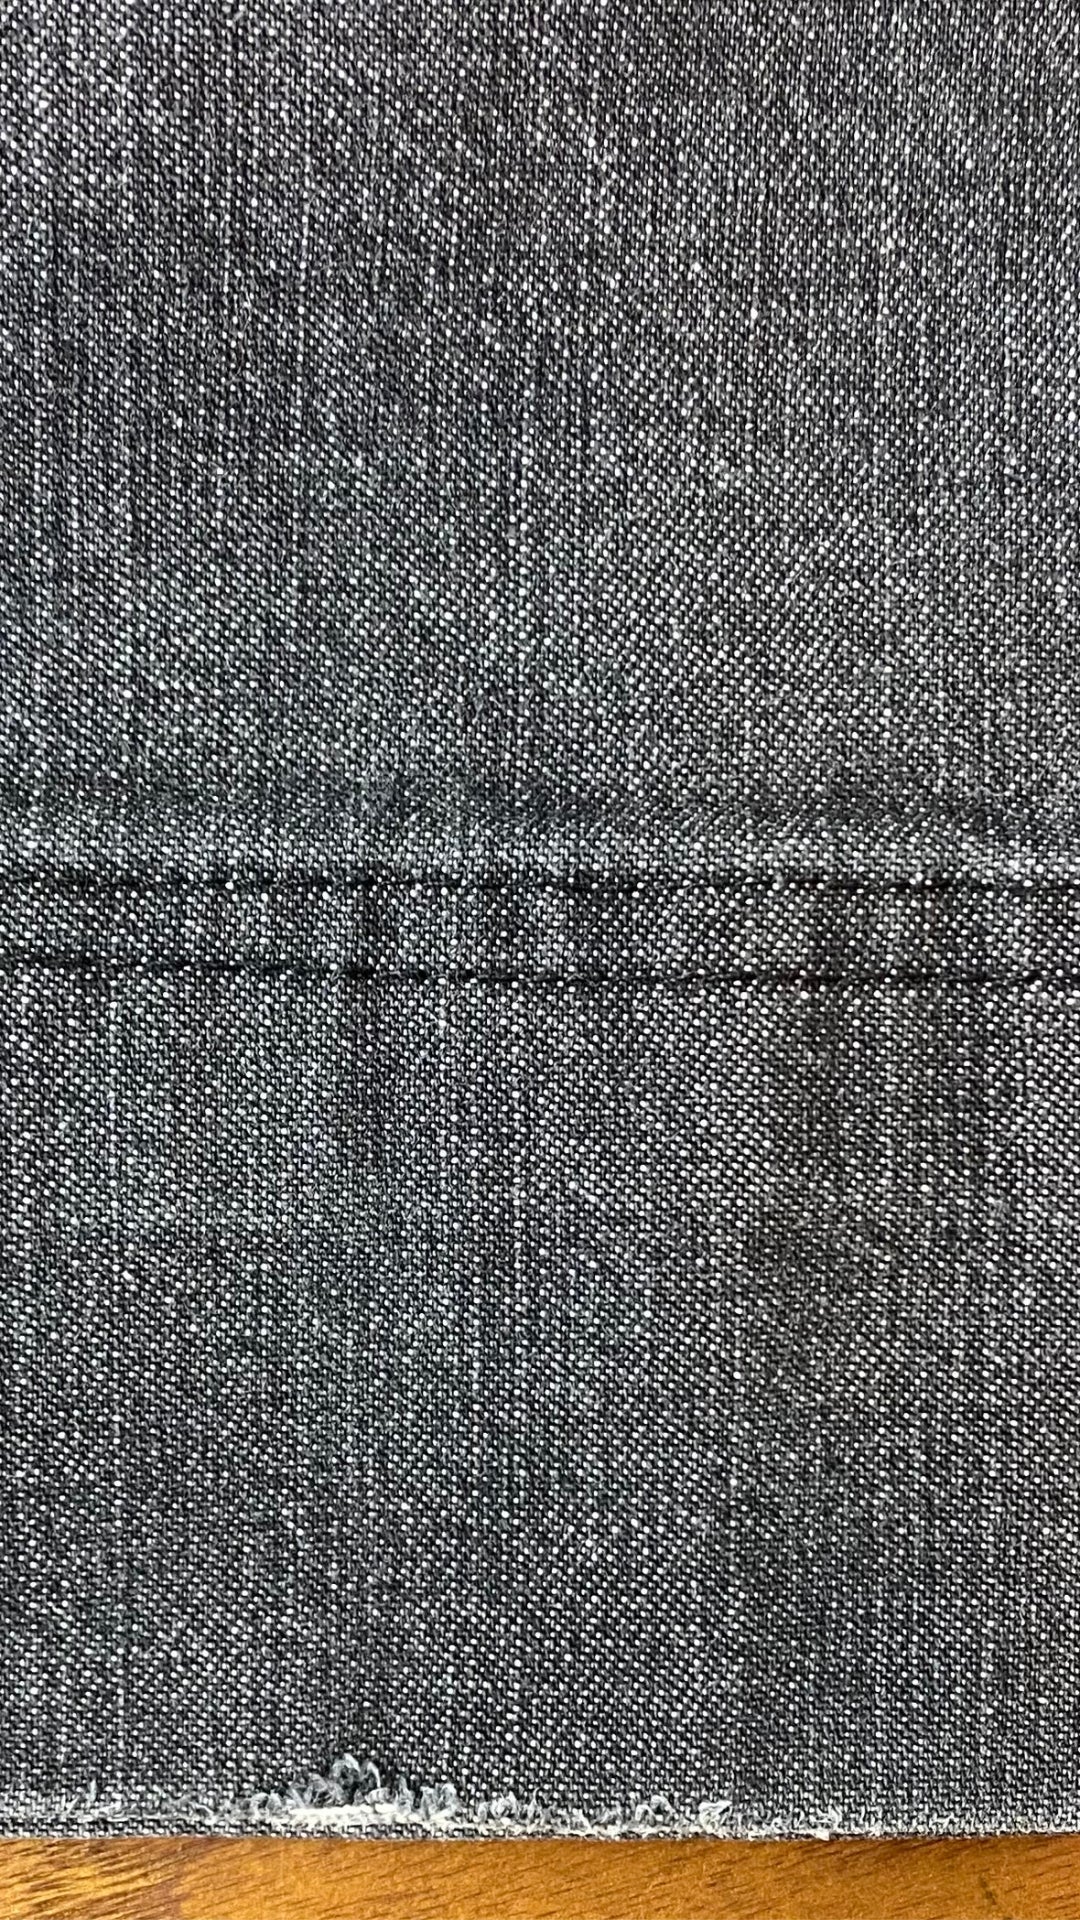 Jeans gris délavé à jambe large Luisa Cerano, taille 10. Vue de l'ourlet gauche, légèrement usé.